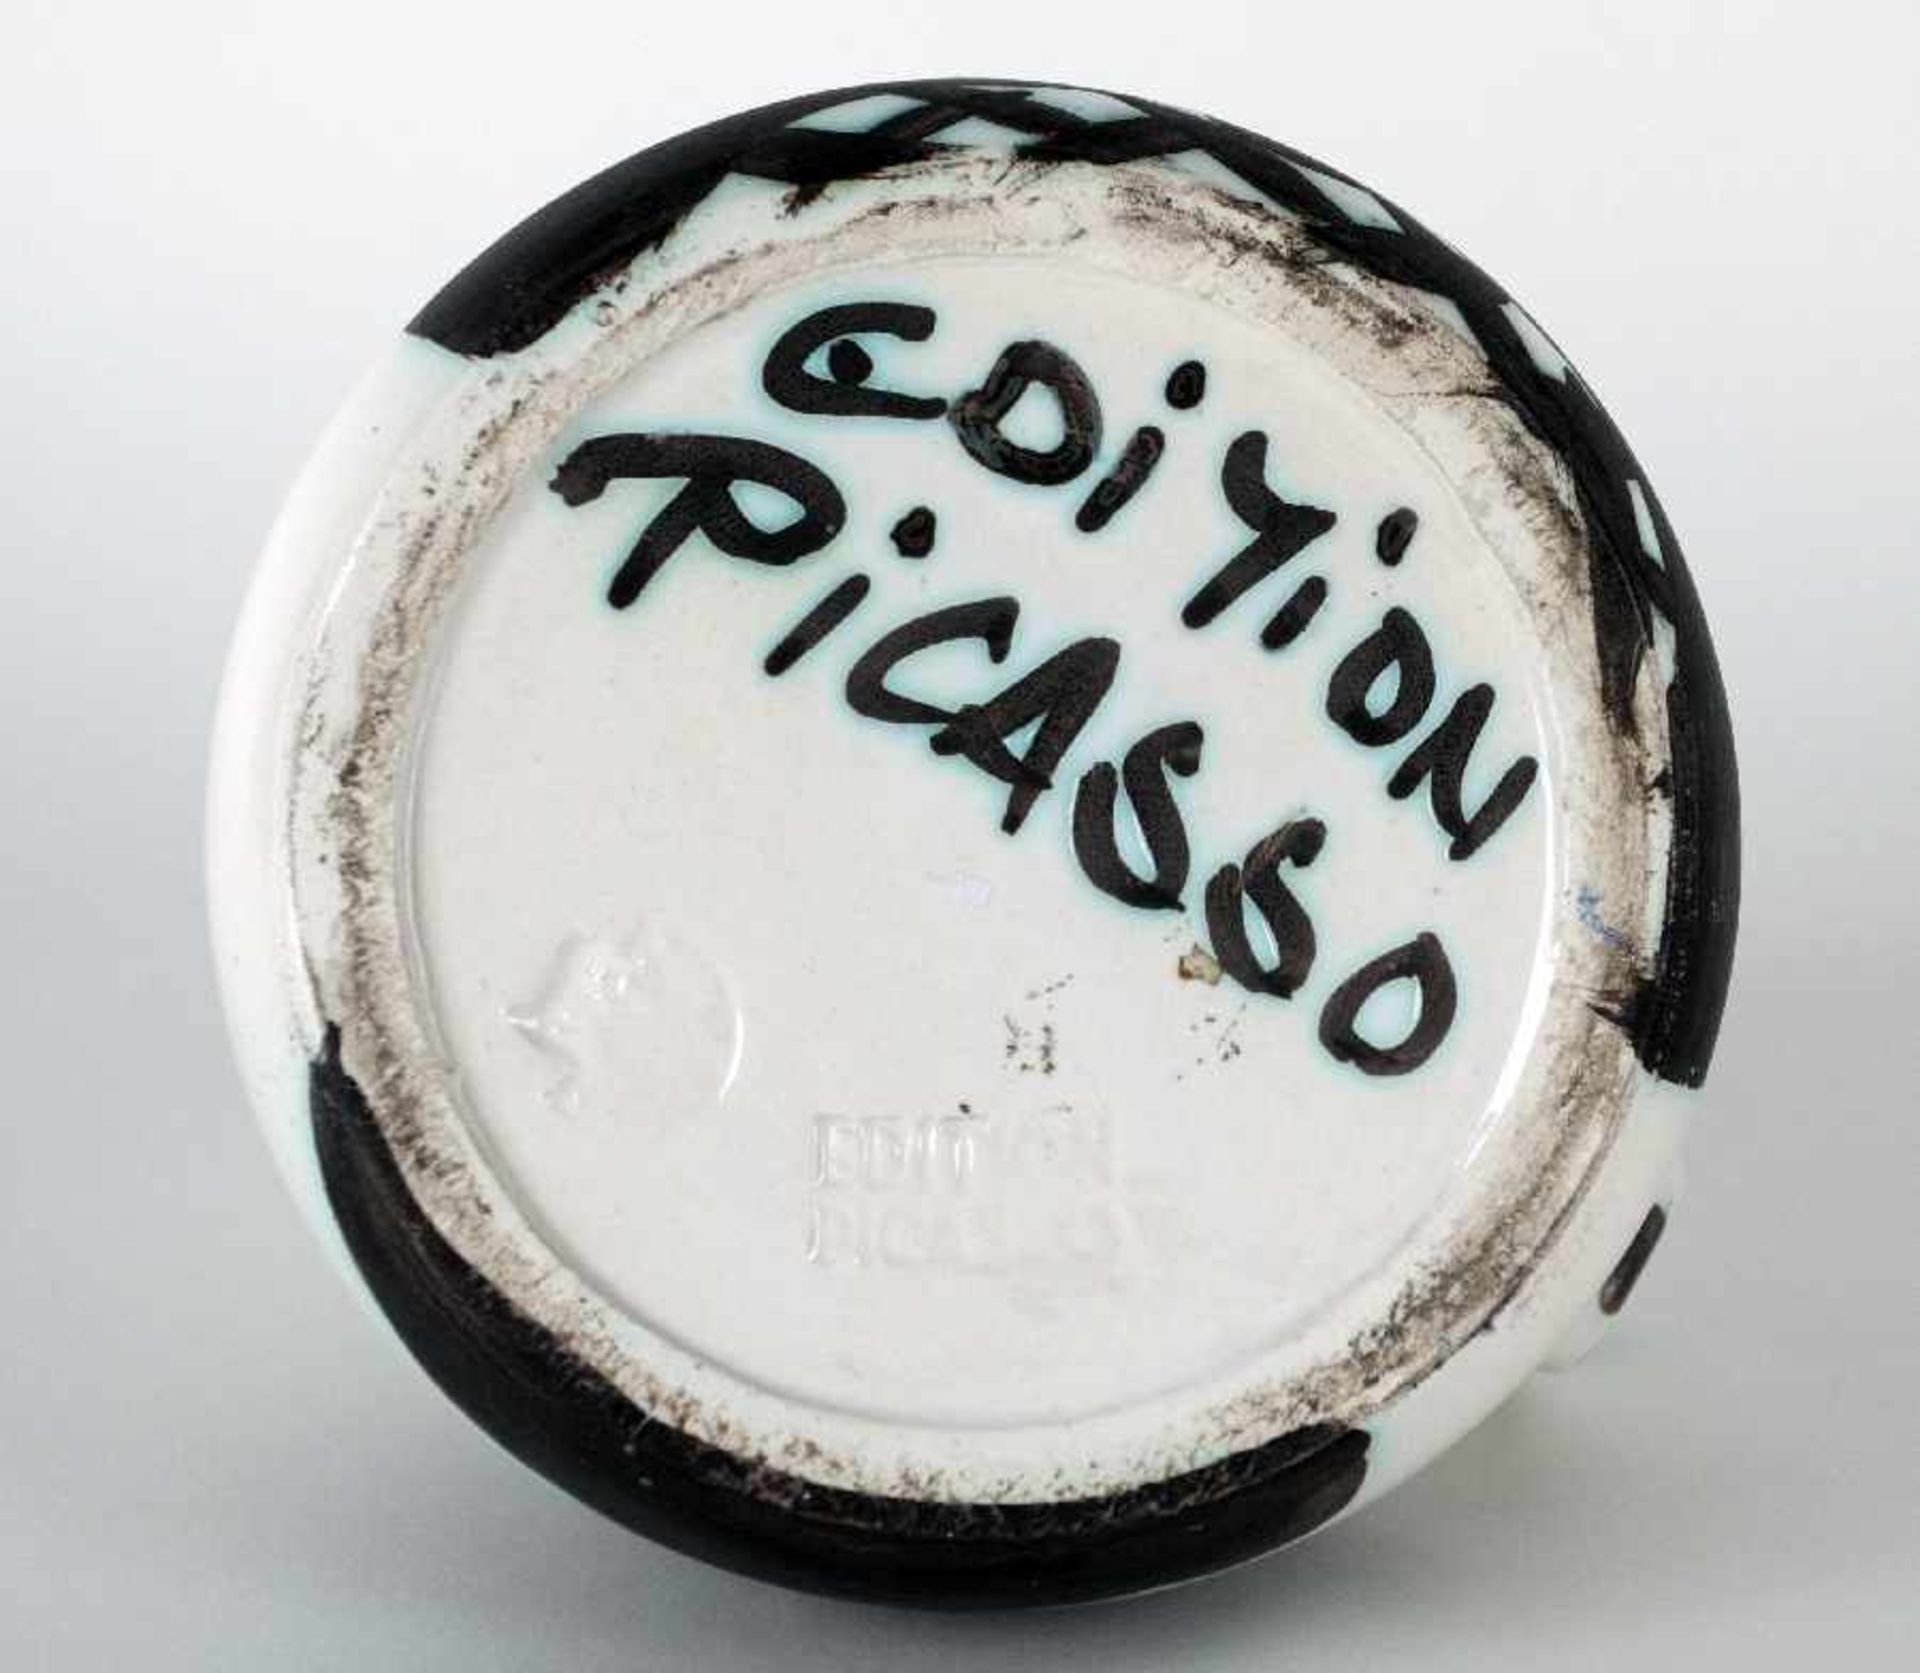 Pablo Picasso1881 Malaga - 1973 MouginsPichet tourné (Henkelkanne)Keramik, gebrannt und bemalt, - Bild 3 aus 3